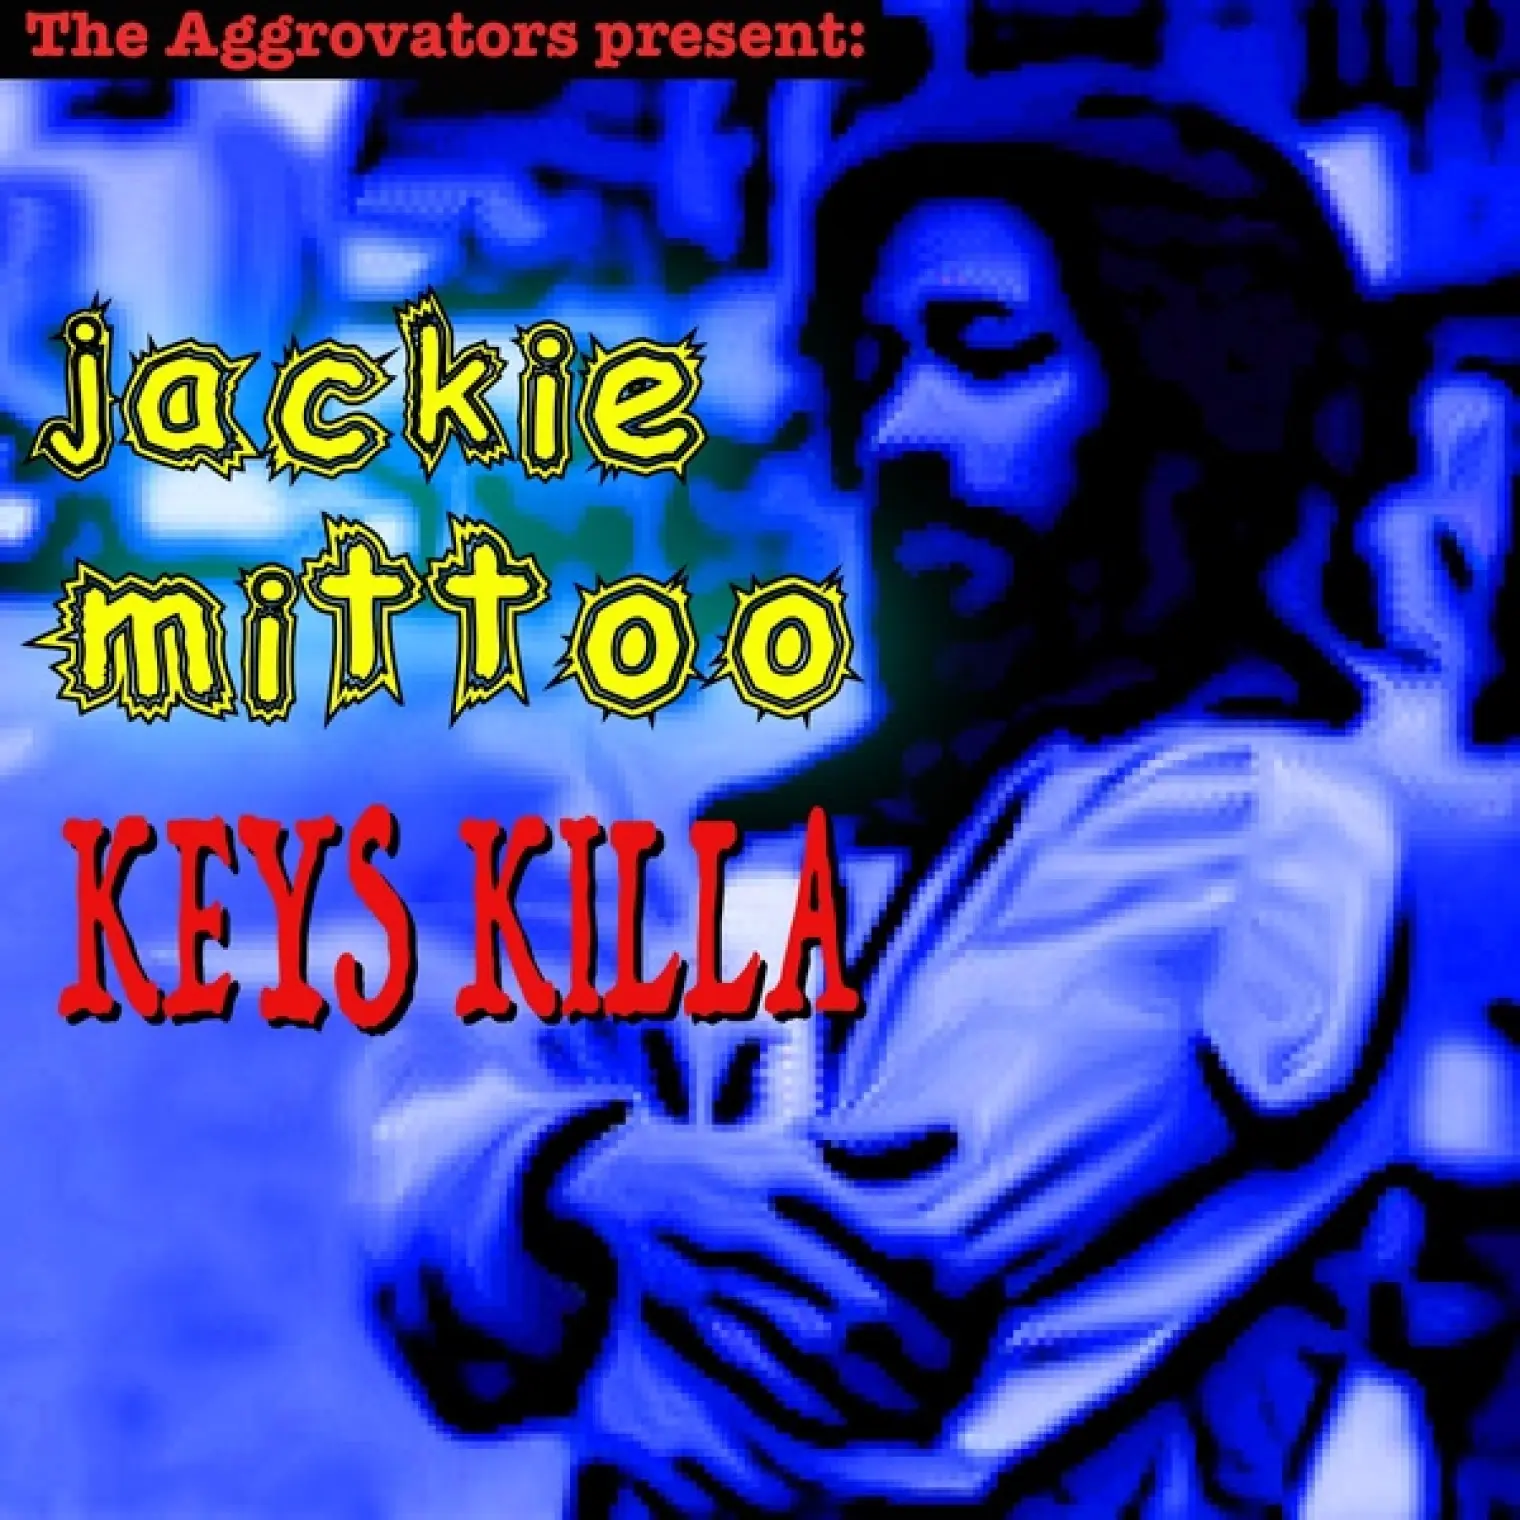 Keys Killa -  Jackie Mittoo 